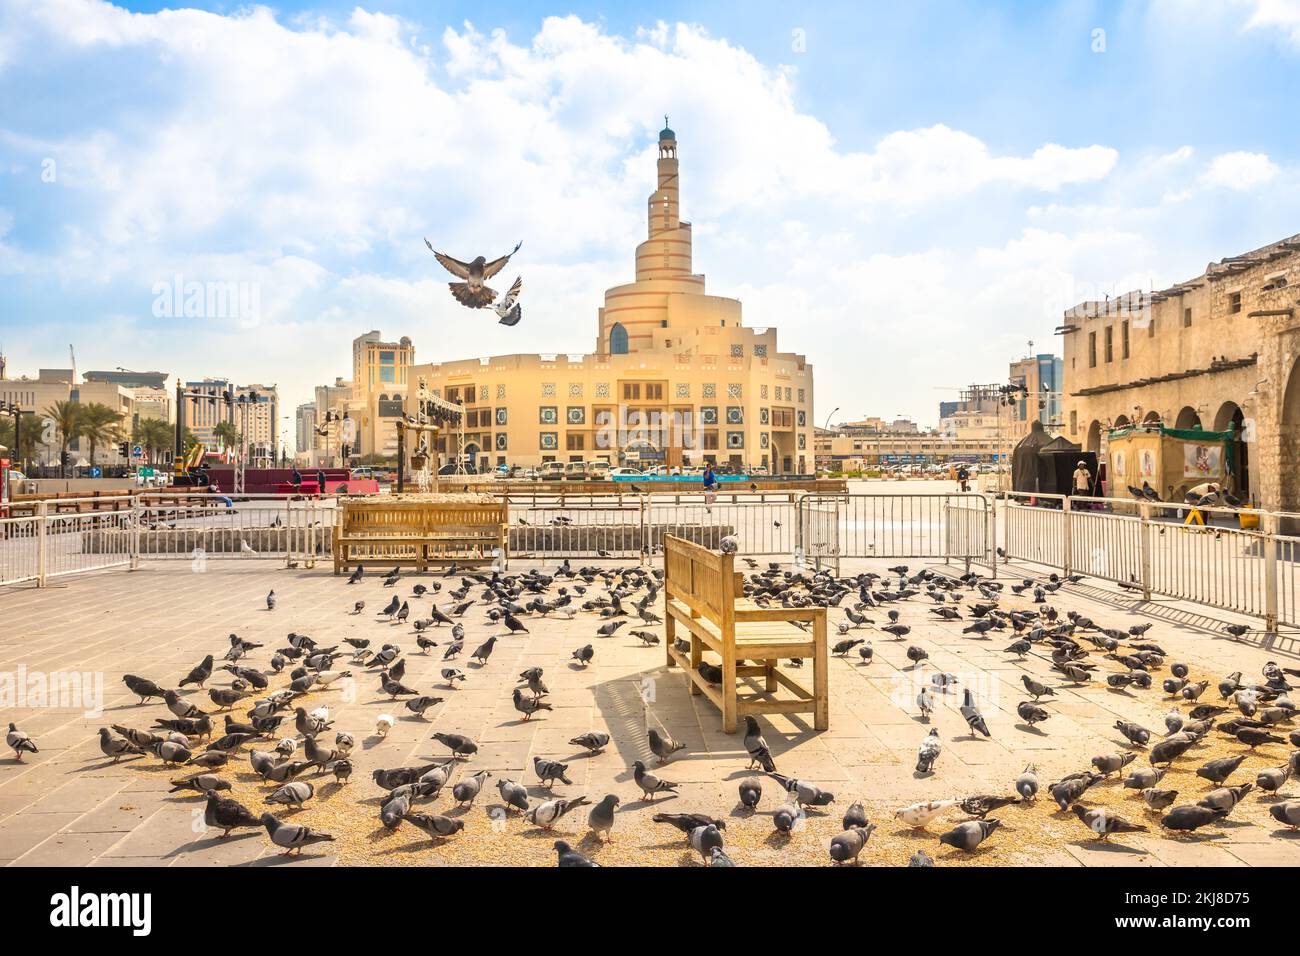 Doha, Qatar - 20 février 2019: De nombreux pigeons volant à Souq Waqif en face du Centre culturel islamique de Fanar avec mosquée et minaret en arrière-plan Banque D'Images